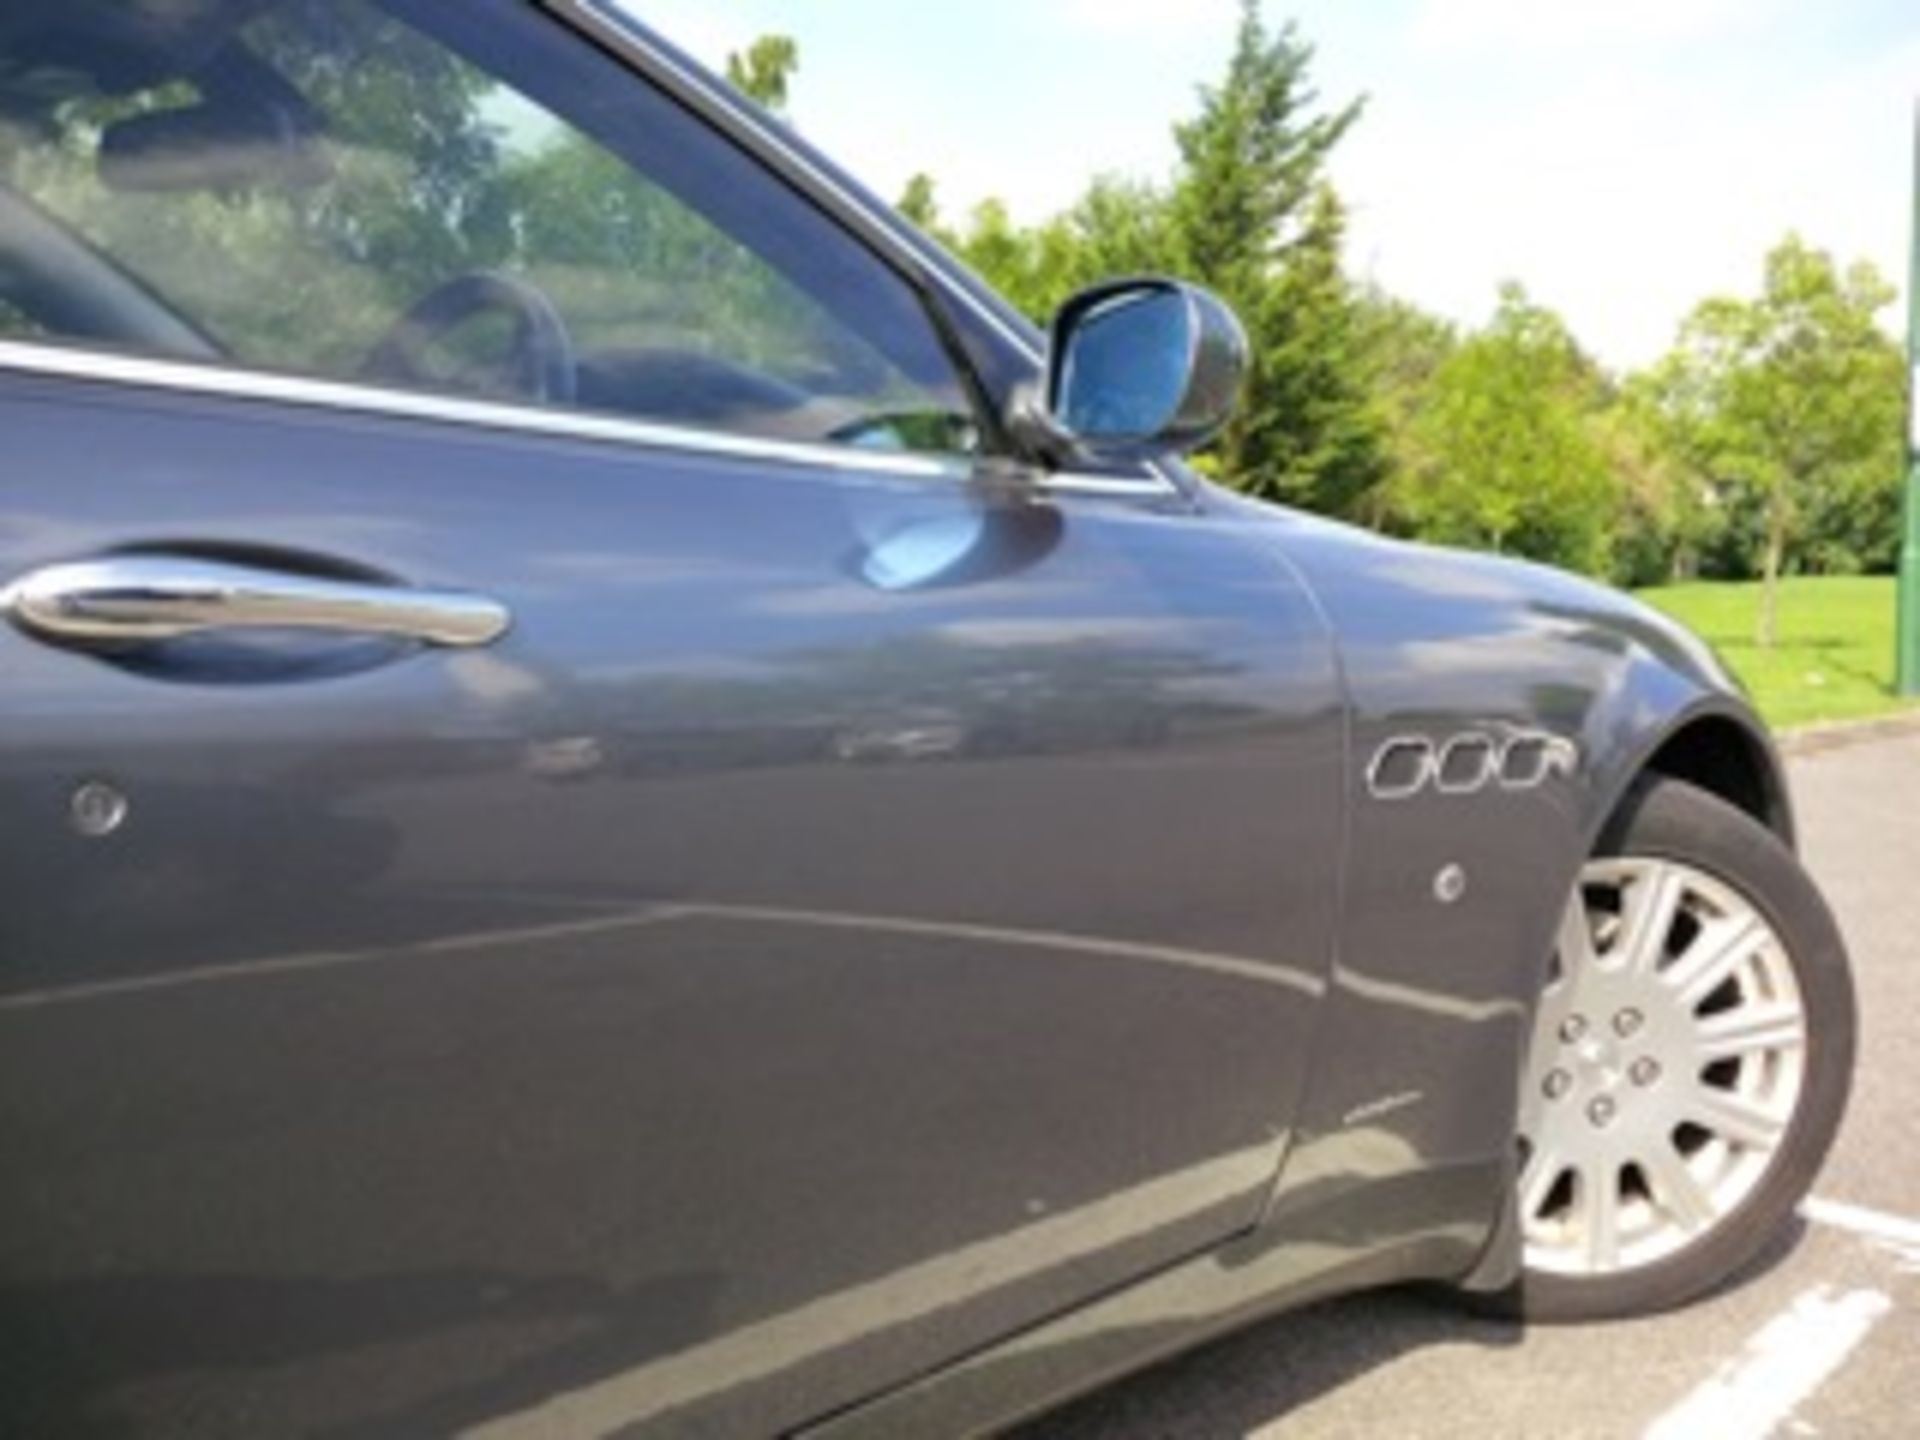 1 x Maserati Quattroporte V8 4 Door DuoSelect - 2006 '06 plate - Grigio Palladio Metallic Finish - - Image 3 of 9